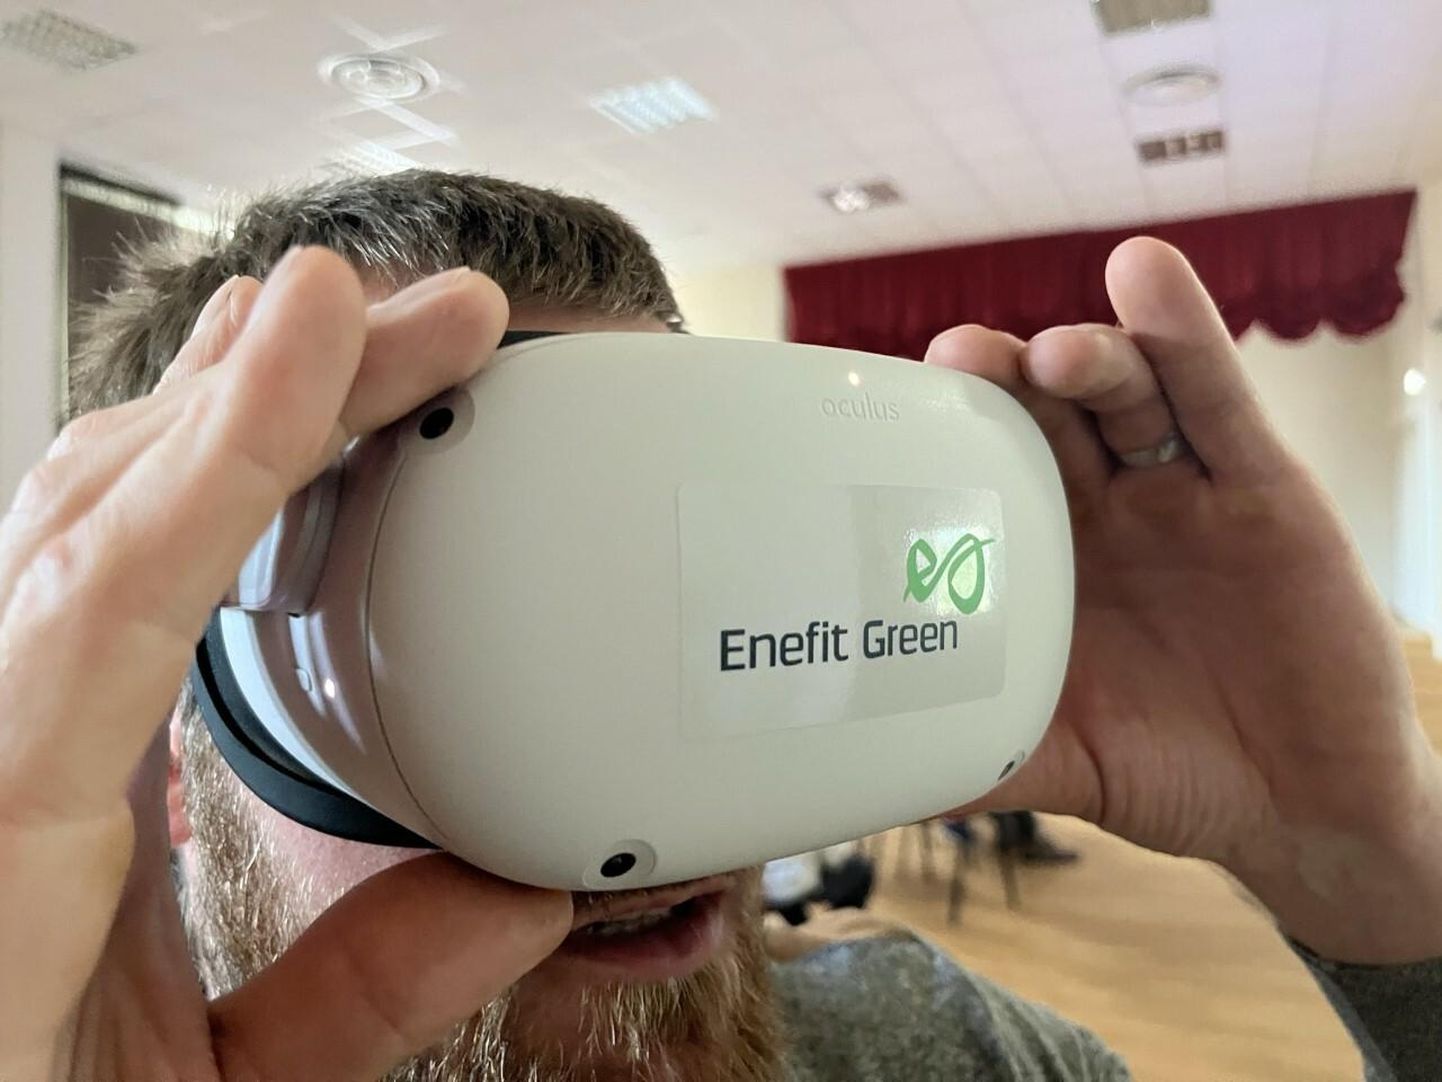 Enefit Green plaanib teha VR-prillide vaated kõigile kavandatavatele tuulikuparkidele, et kohalikel tekiks parem arusaam, kuidas tuugenid hakkavad maastikul välja nägema.